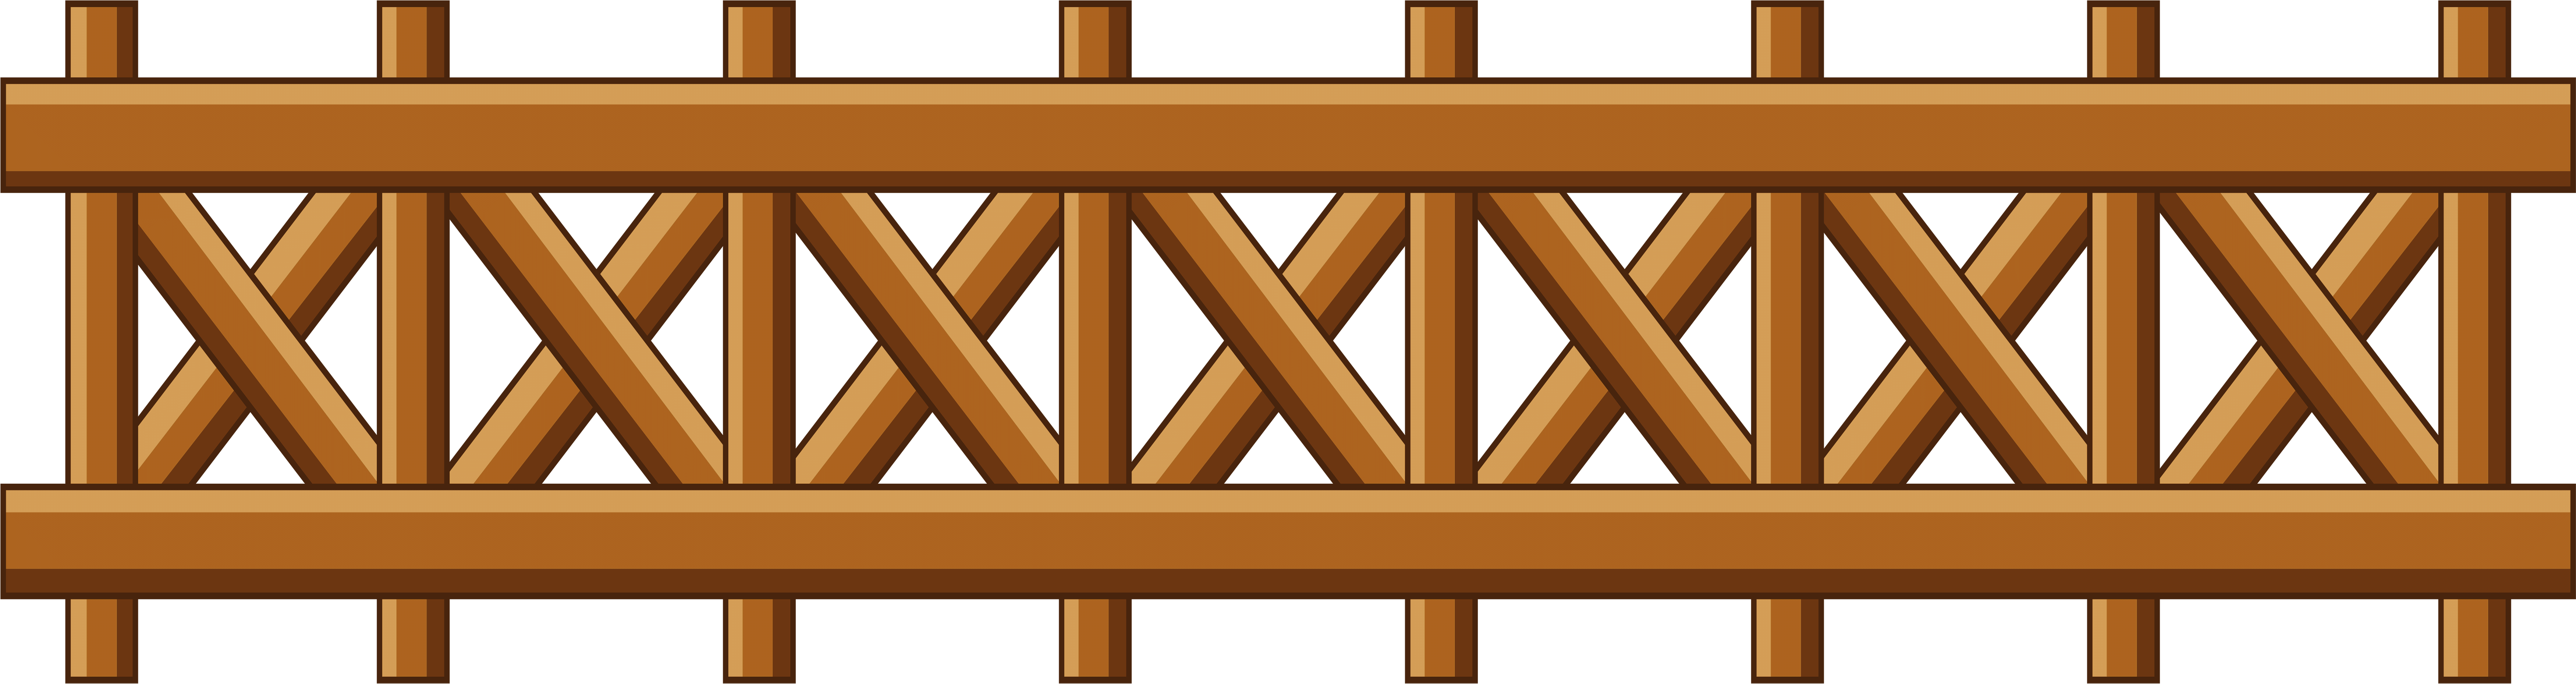 Wooden Fence Design Illustration